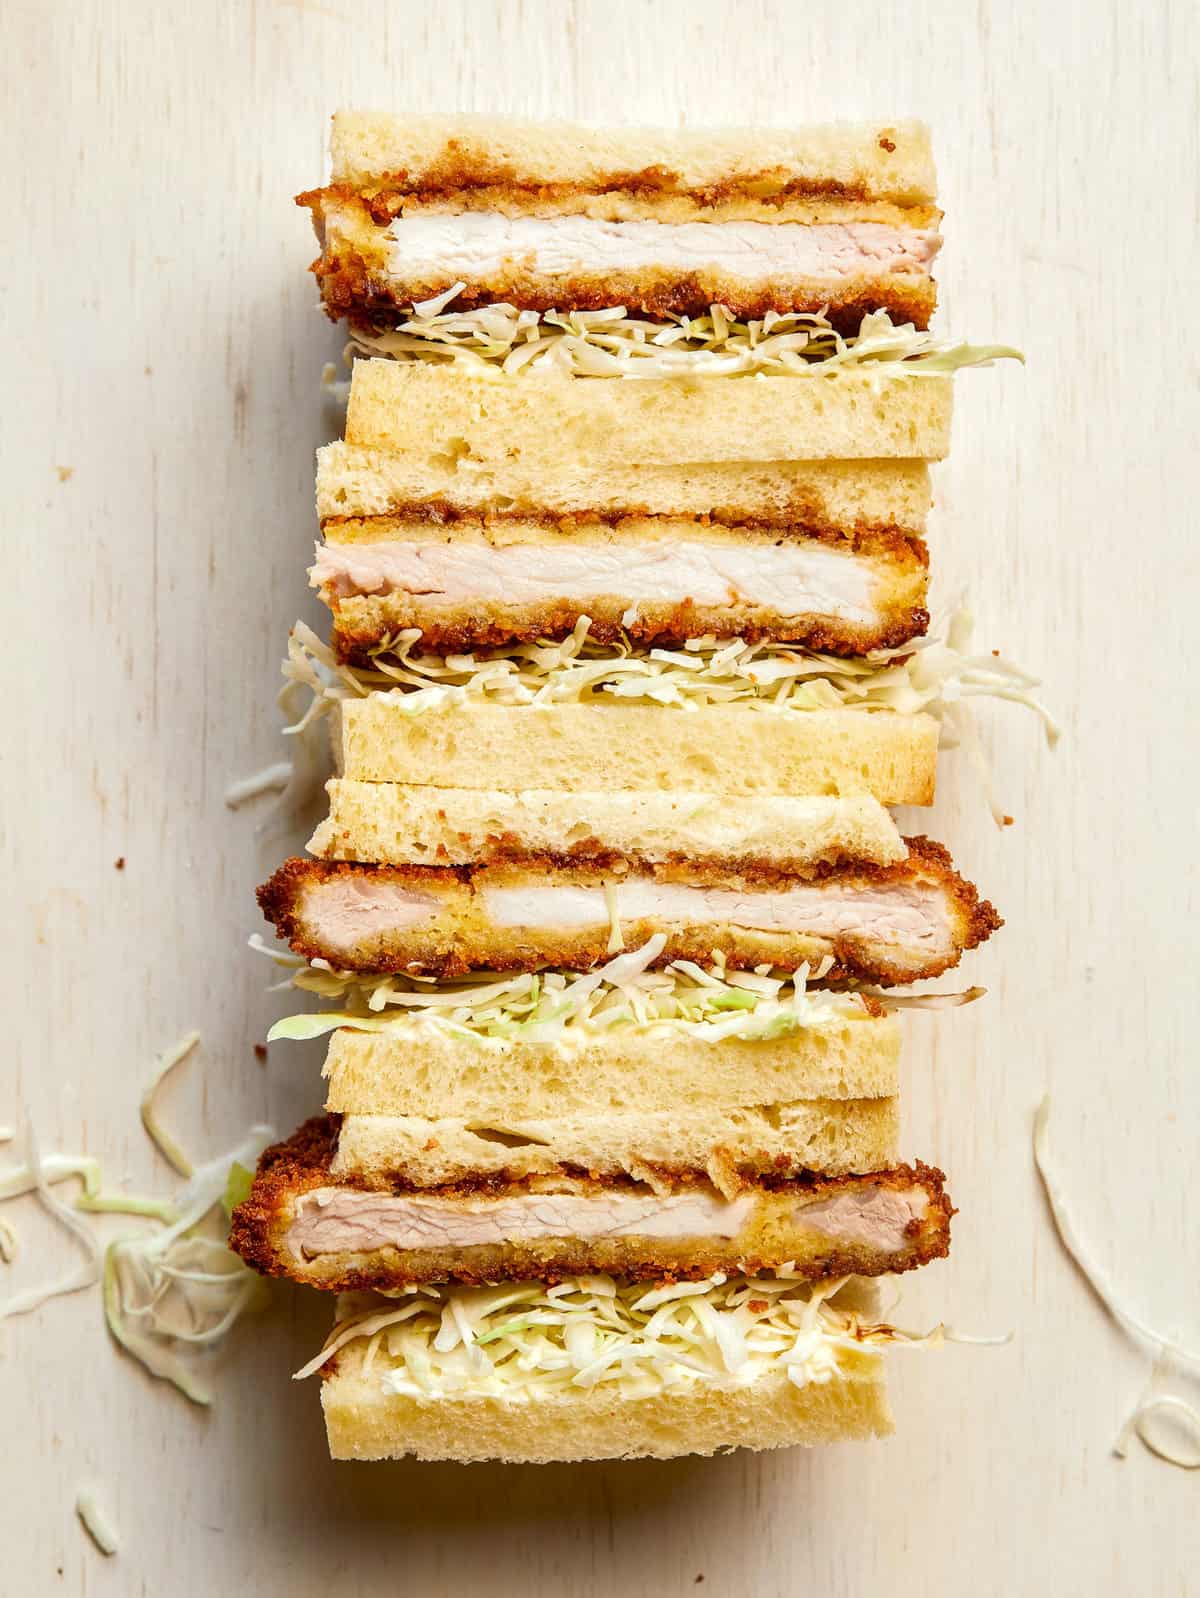 Stacked pork katsu sandwiches cut in half.